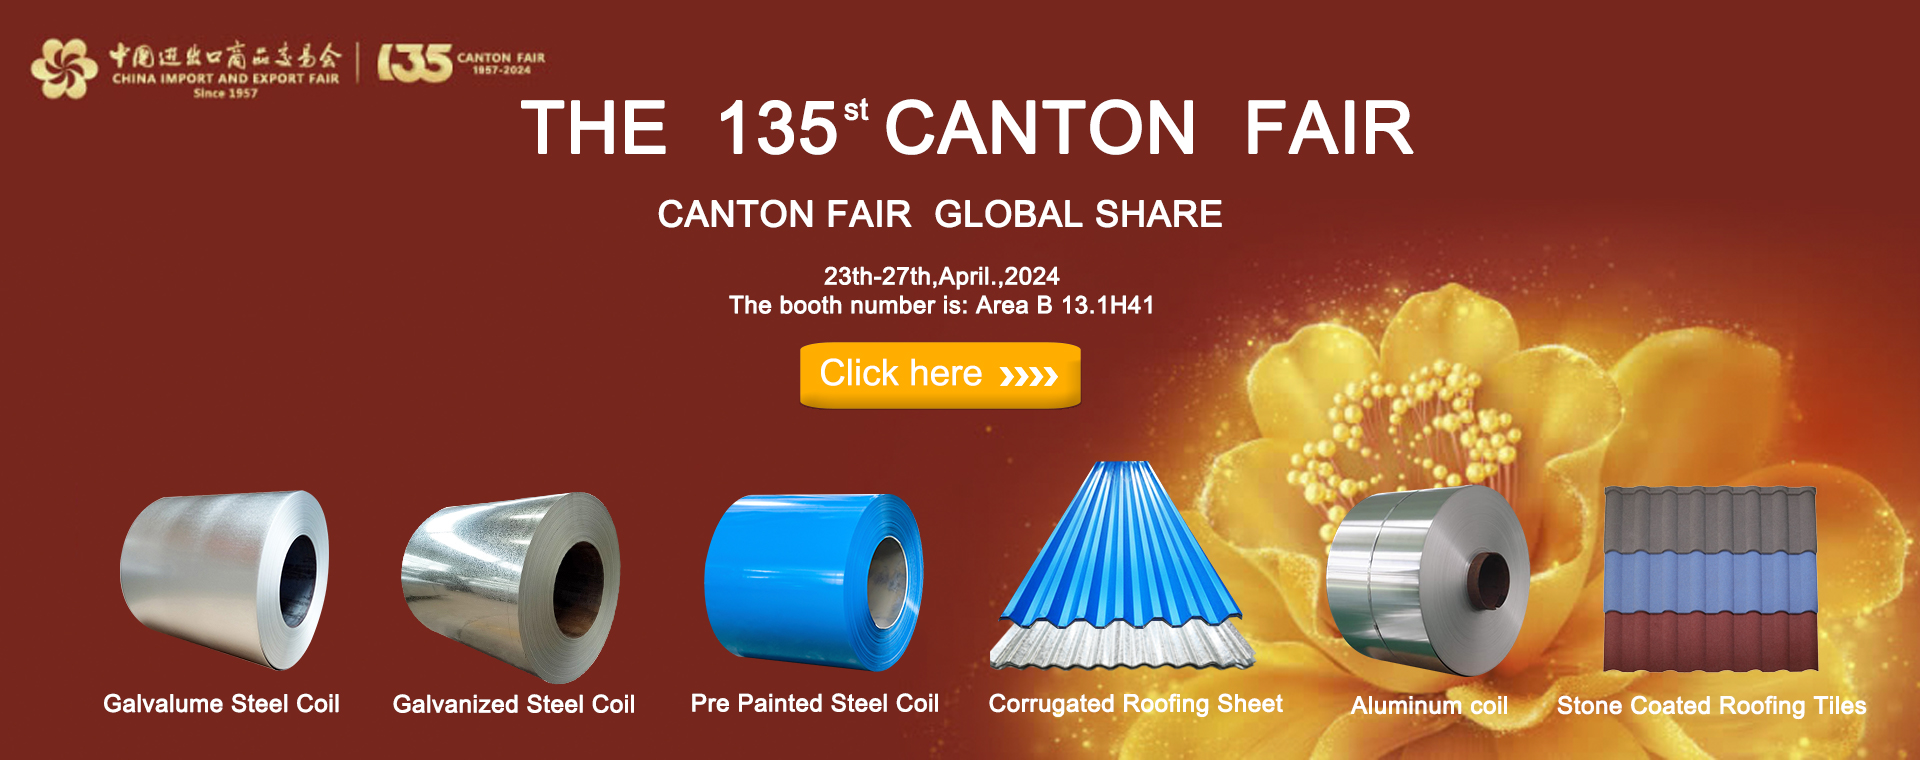 The 135th Canton Fair banner